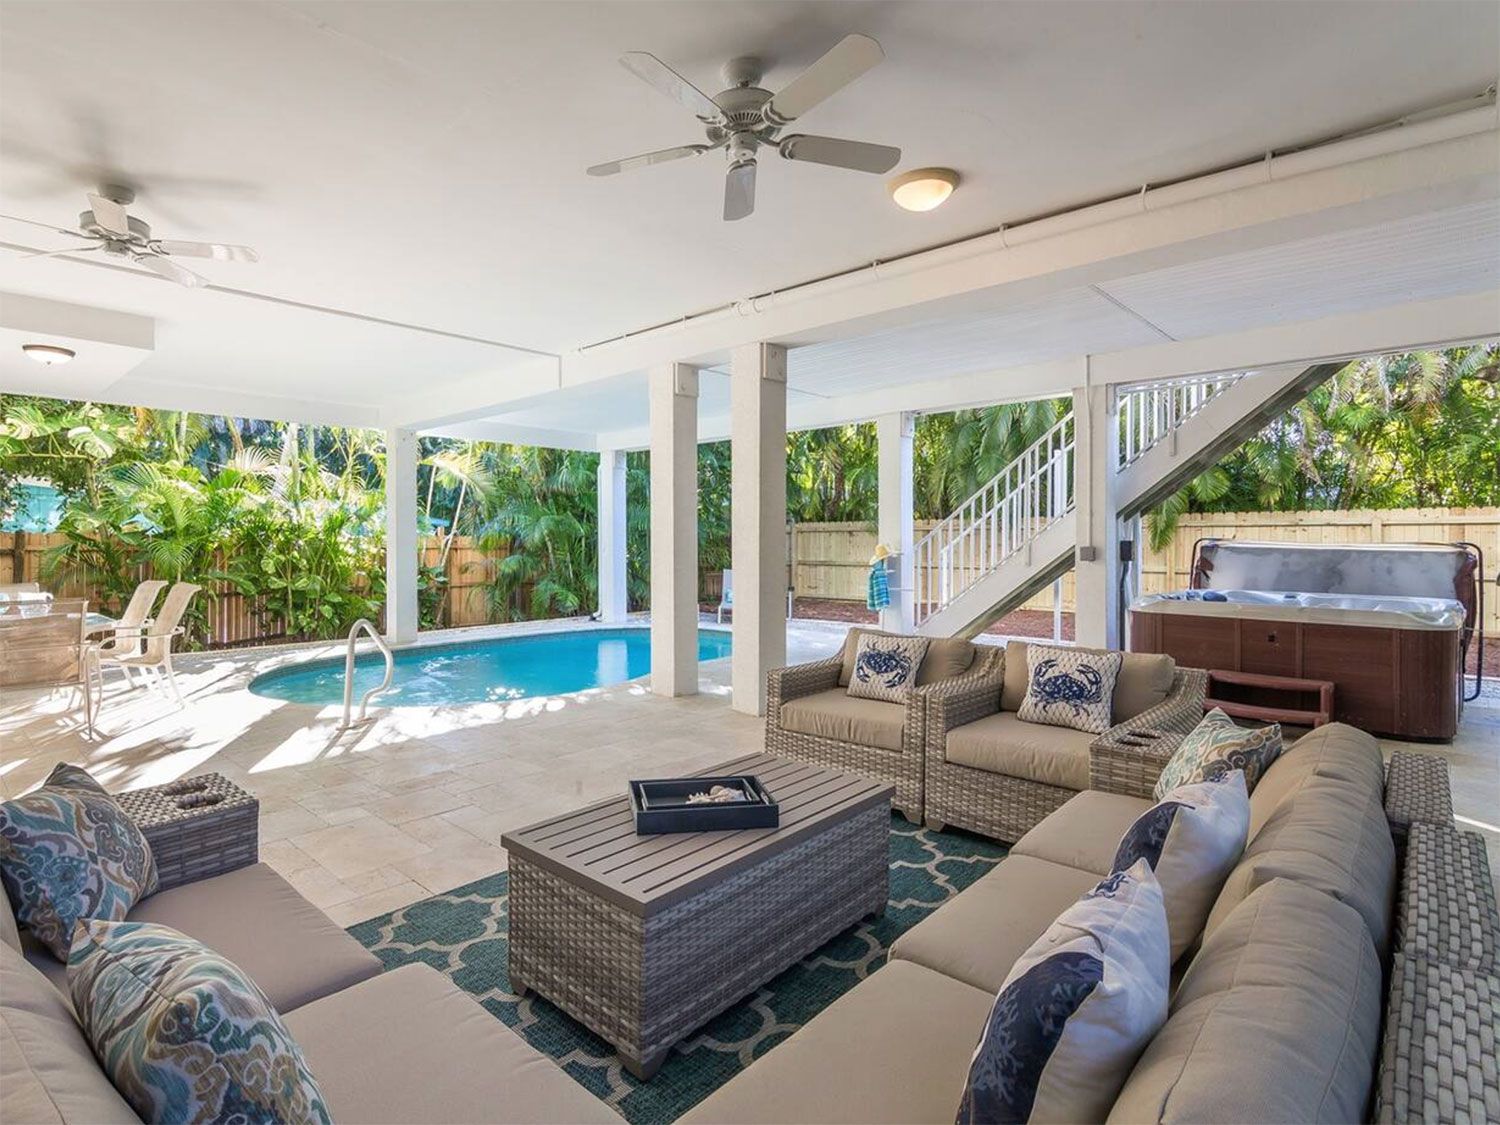 9 increíbles alquileres de Airbnb para tus próximas vacaciones en Florida 2